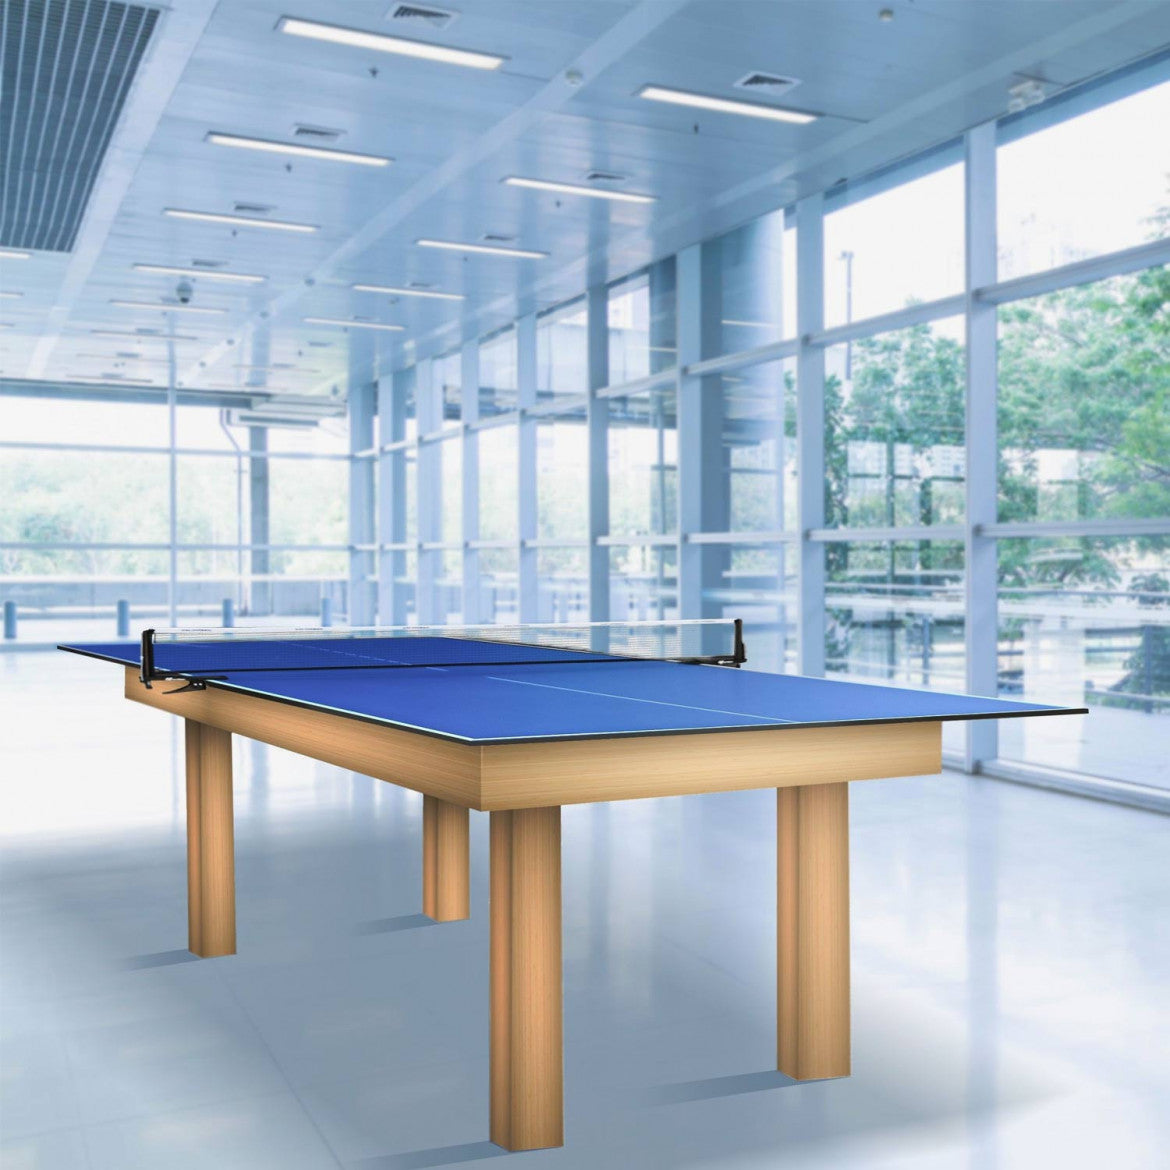 Cornilleau Indoor table tennis tops